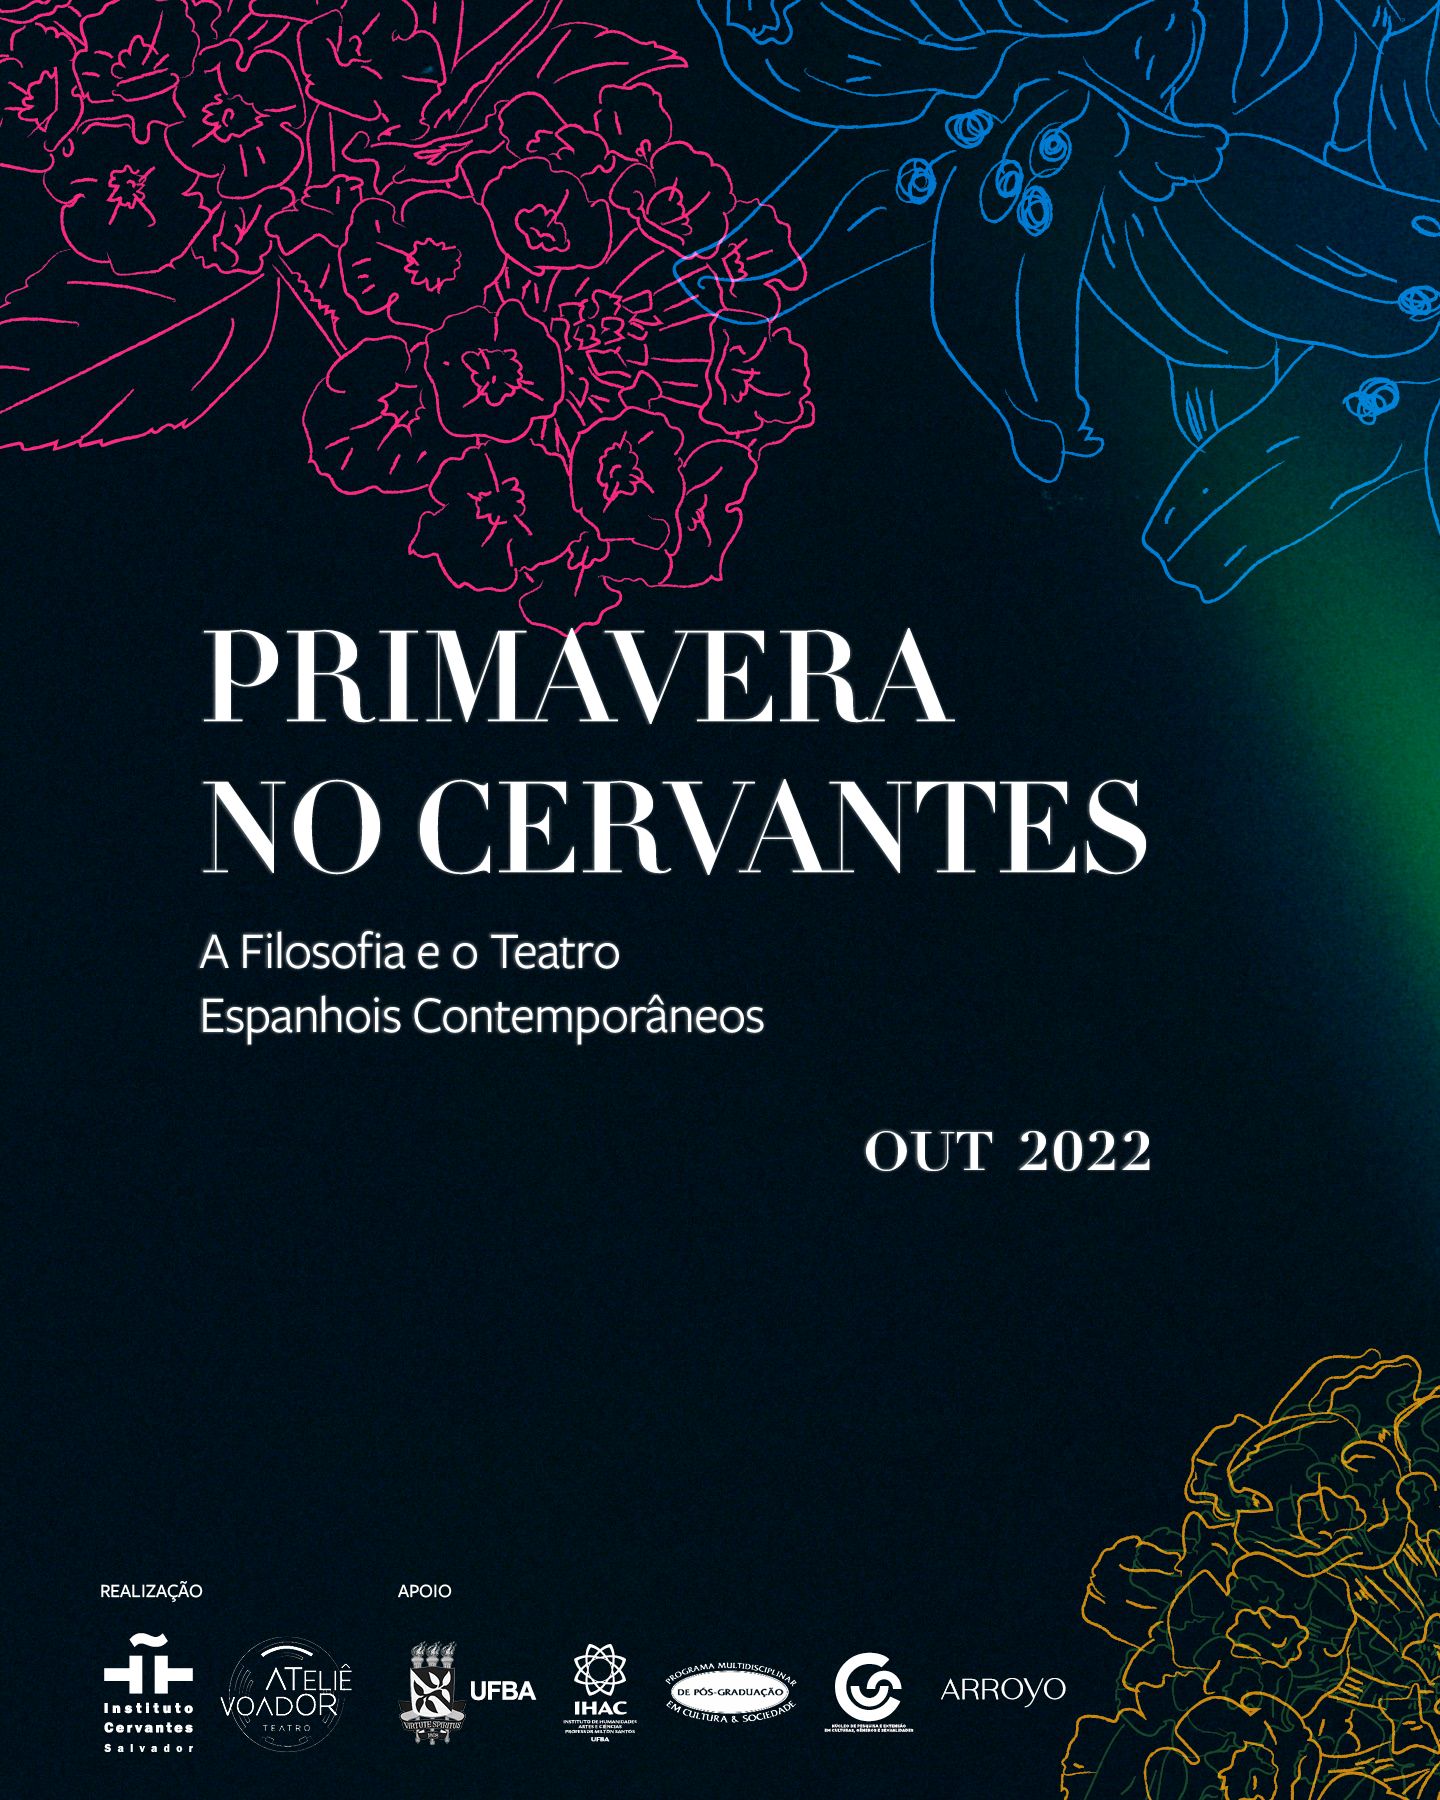 Primavera en el Cervantes. La Filosofía y el Teatro Españoles Contemporáneos